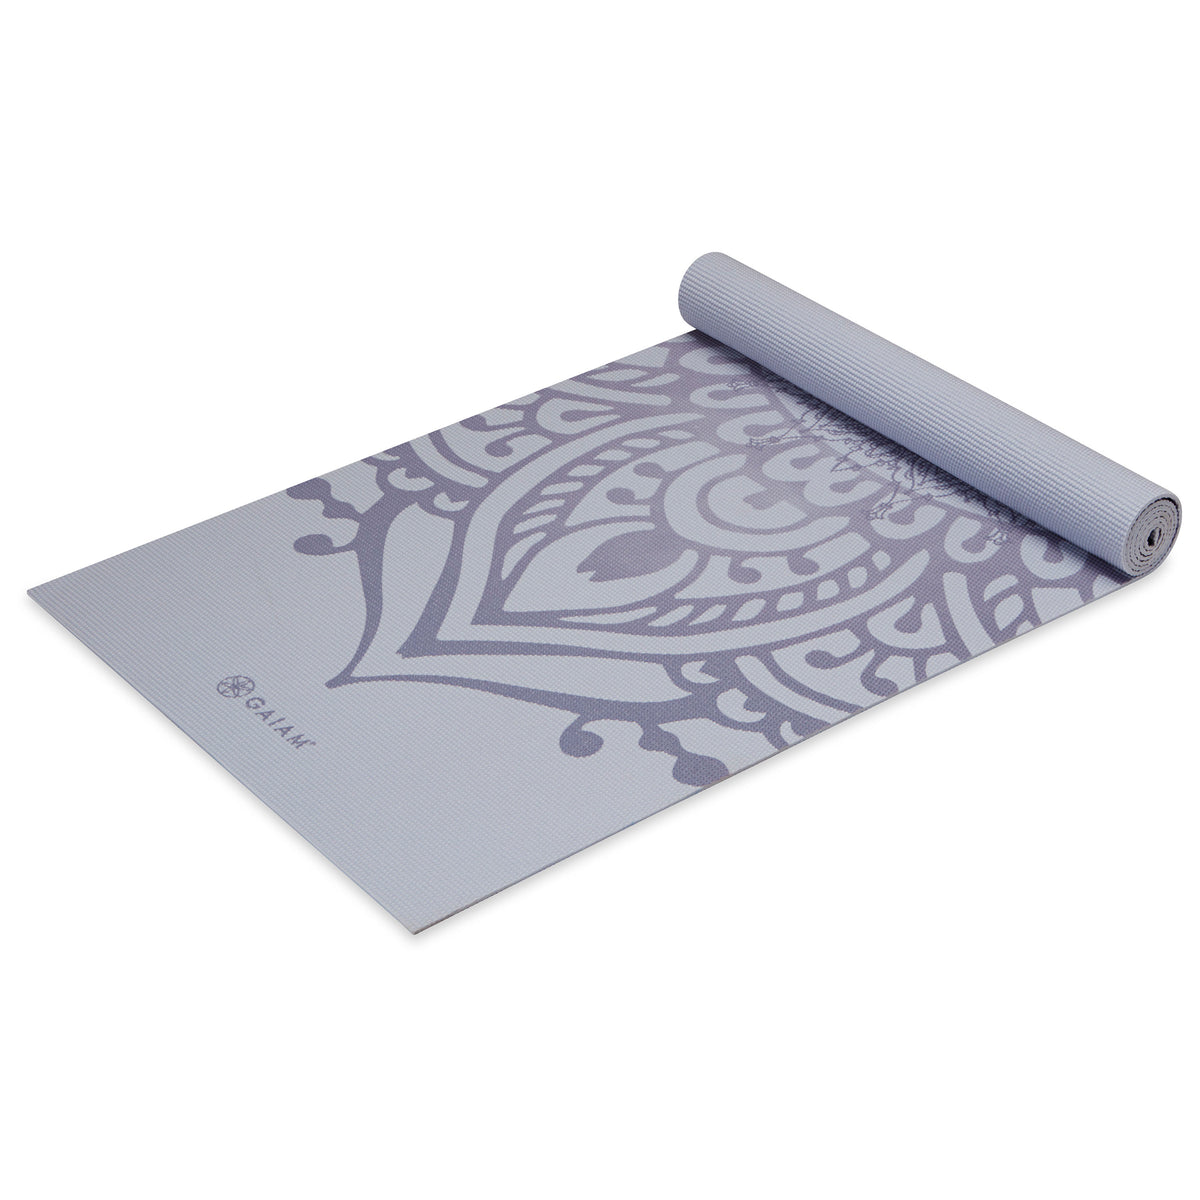 Gaiam Premium Print Yoga Mat, Citron Sundial, 6mm, Mats 